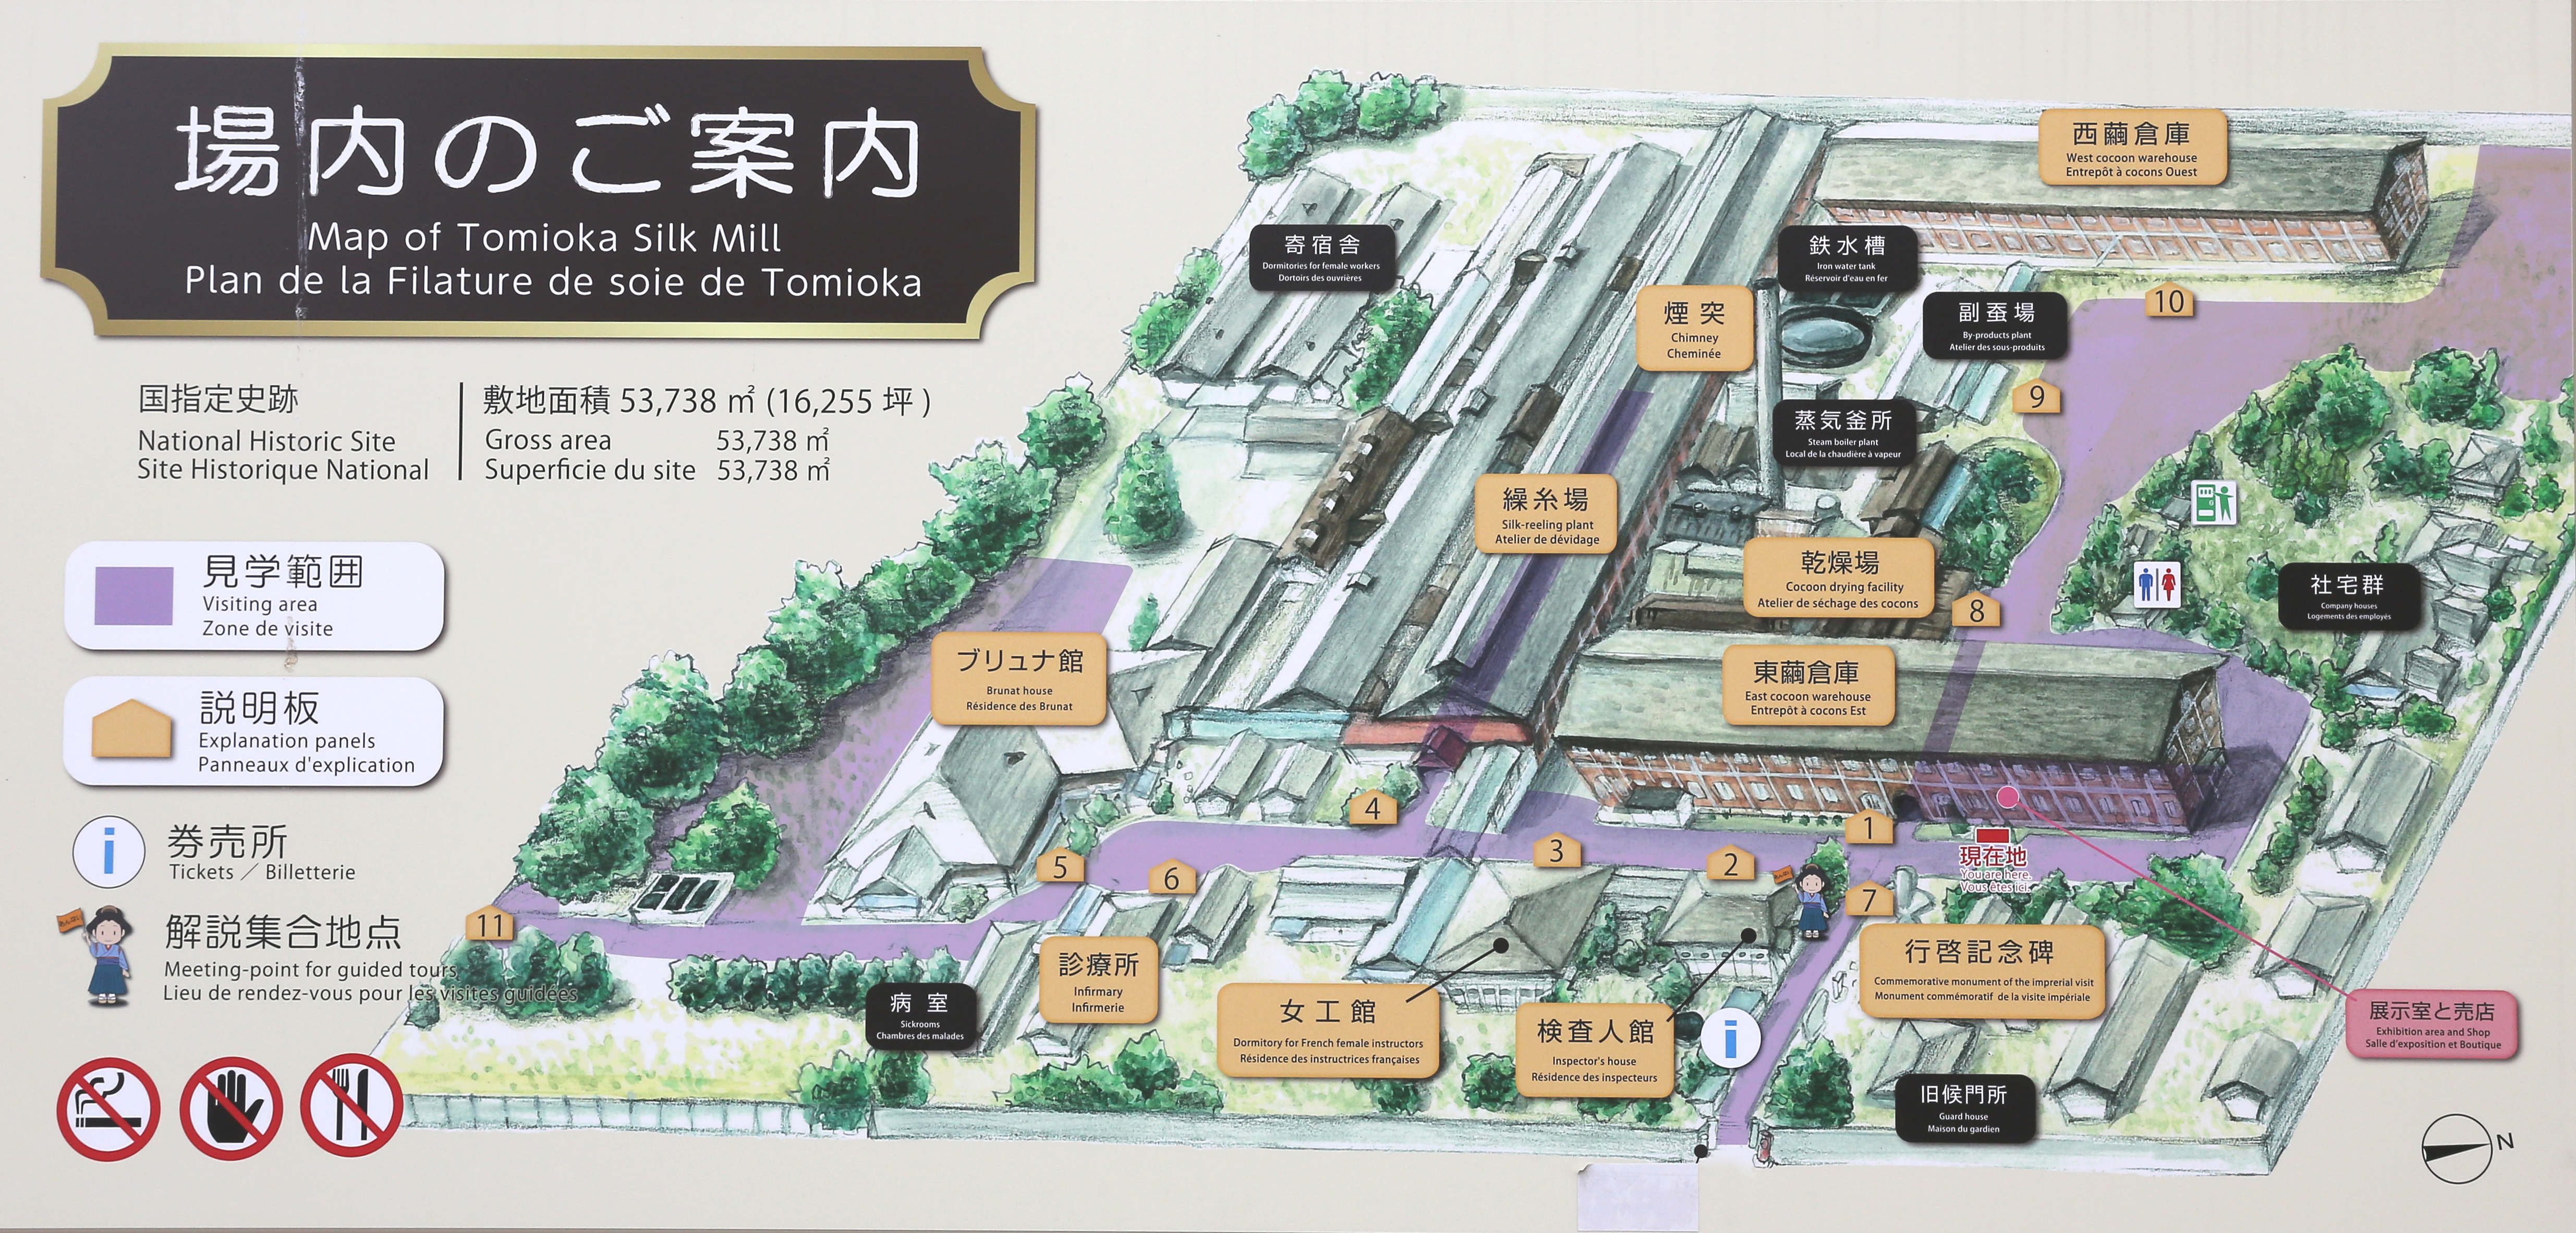 富岡製糸場 敷地内案内図(画面いっぱいに表示) 2014